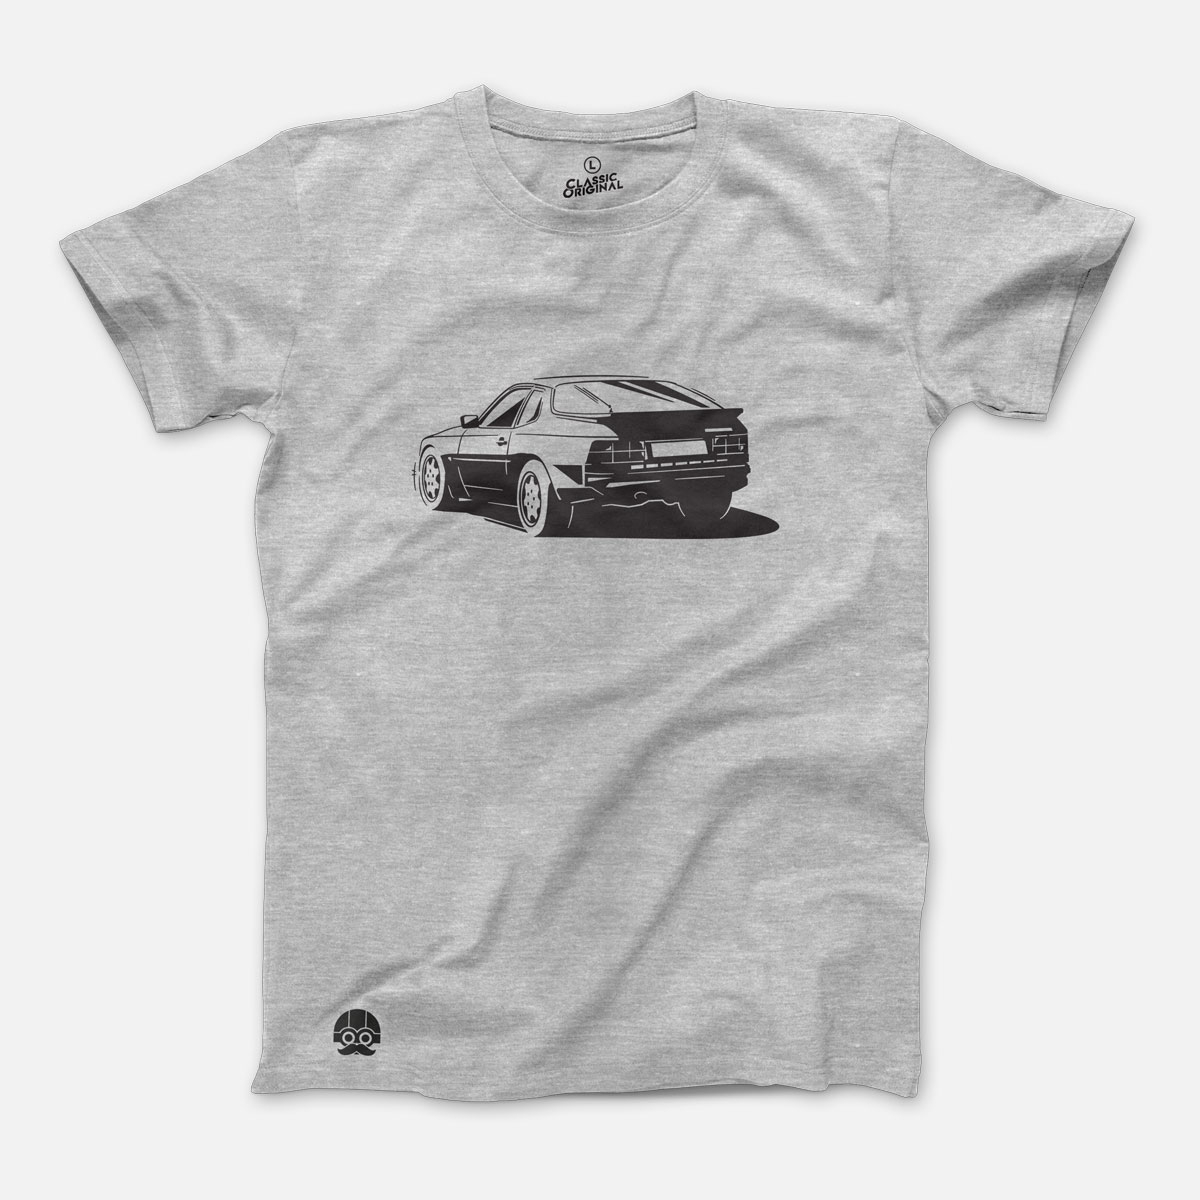 T-shirt with Porsche 944 car - XL, Gray